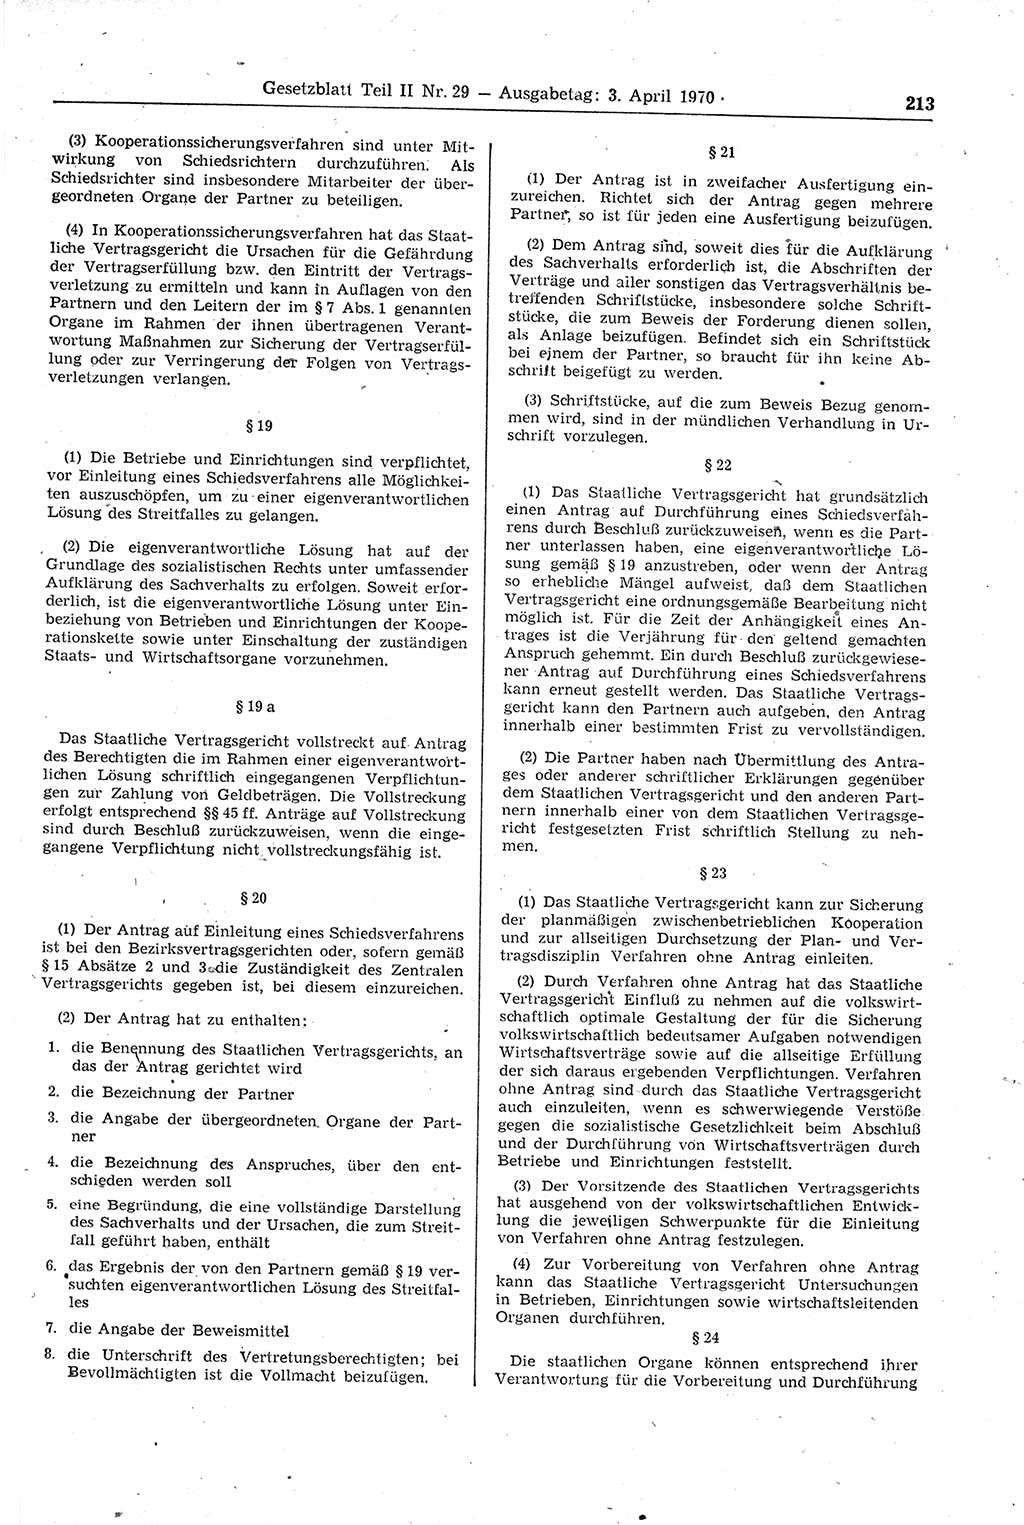 Gesetzblatt (GBl.) der Deutschen Demokratischen Republik (DDR) Teil ⅠⅠ 1970, Seite 213 (GBl. DDR ⅠⅠ 1970, S. 213)